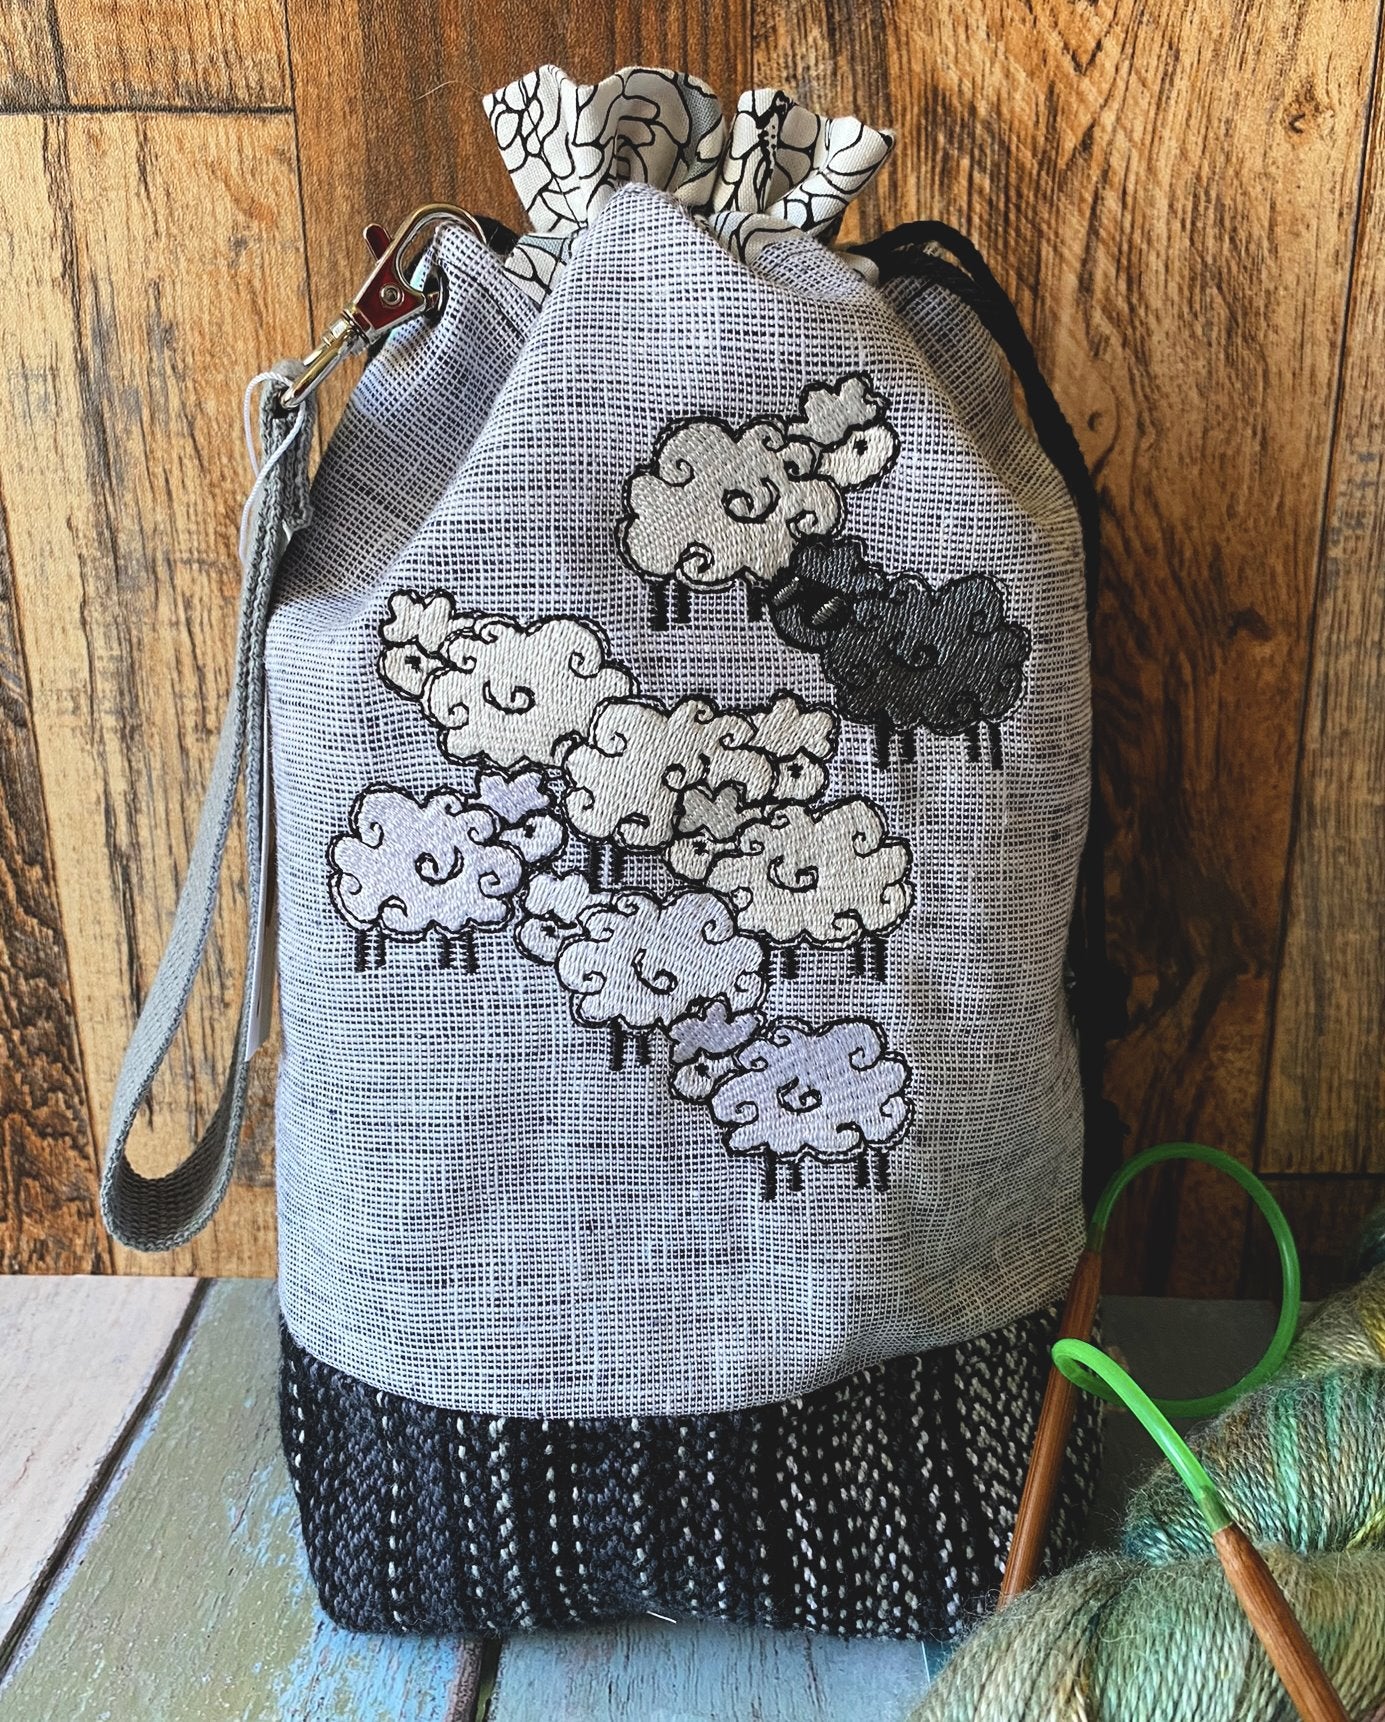 Knitting Takes Balls and Sheep Embroidery Drawstring Bag